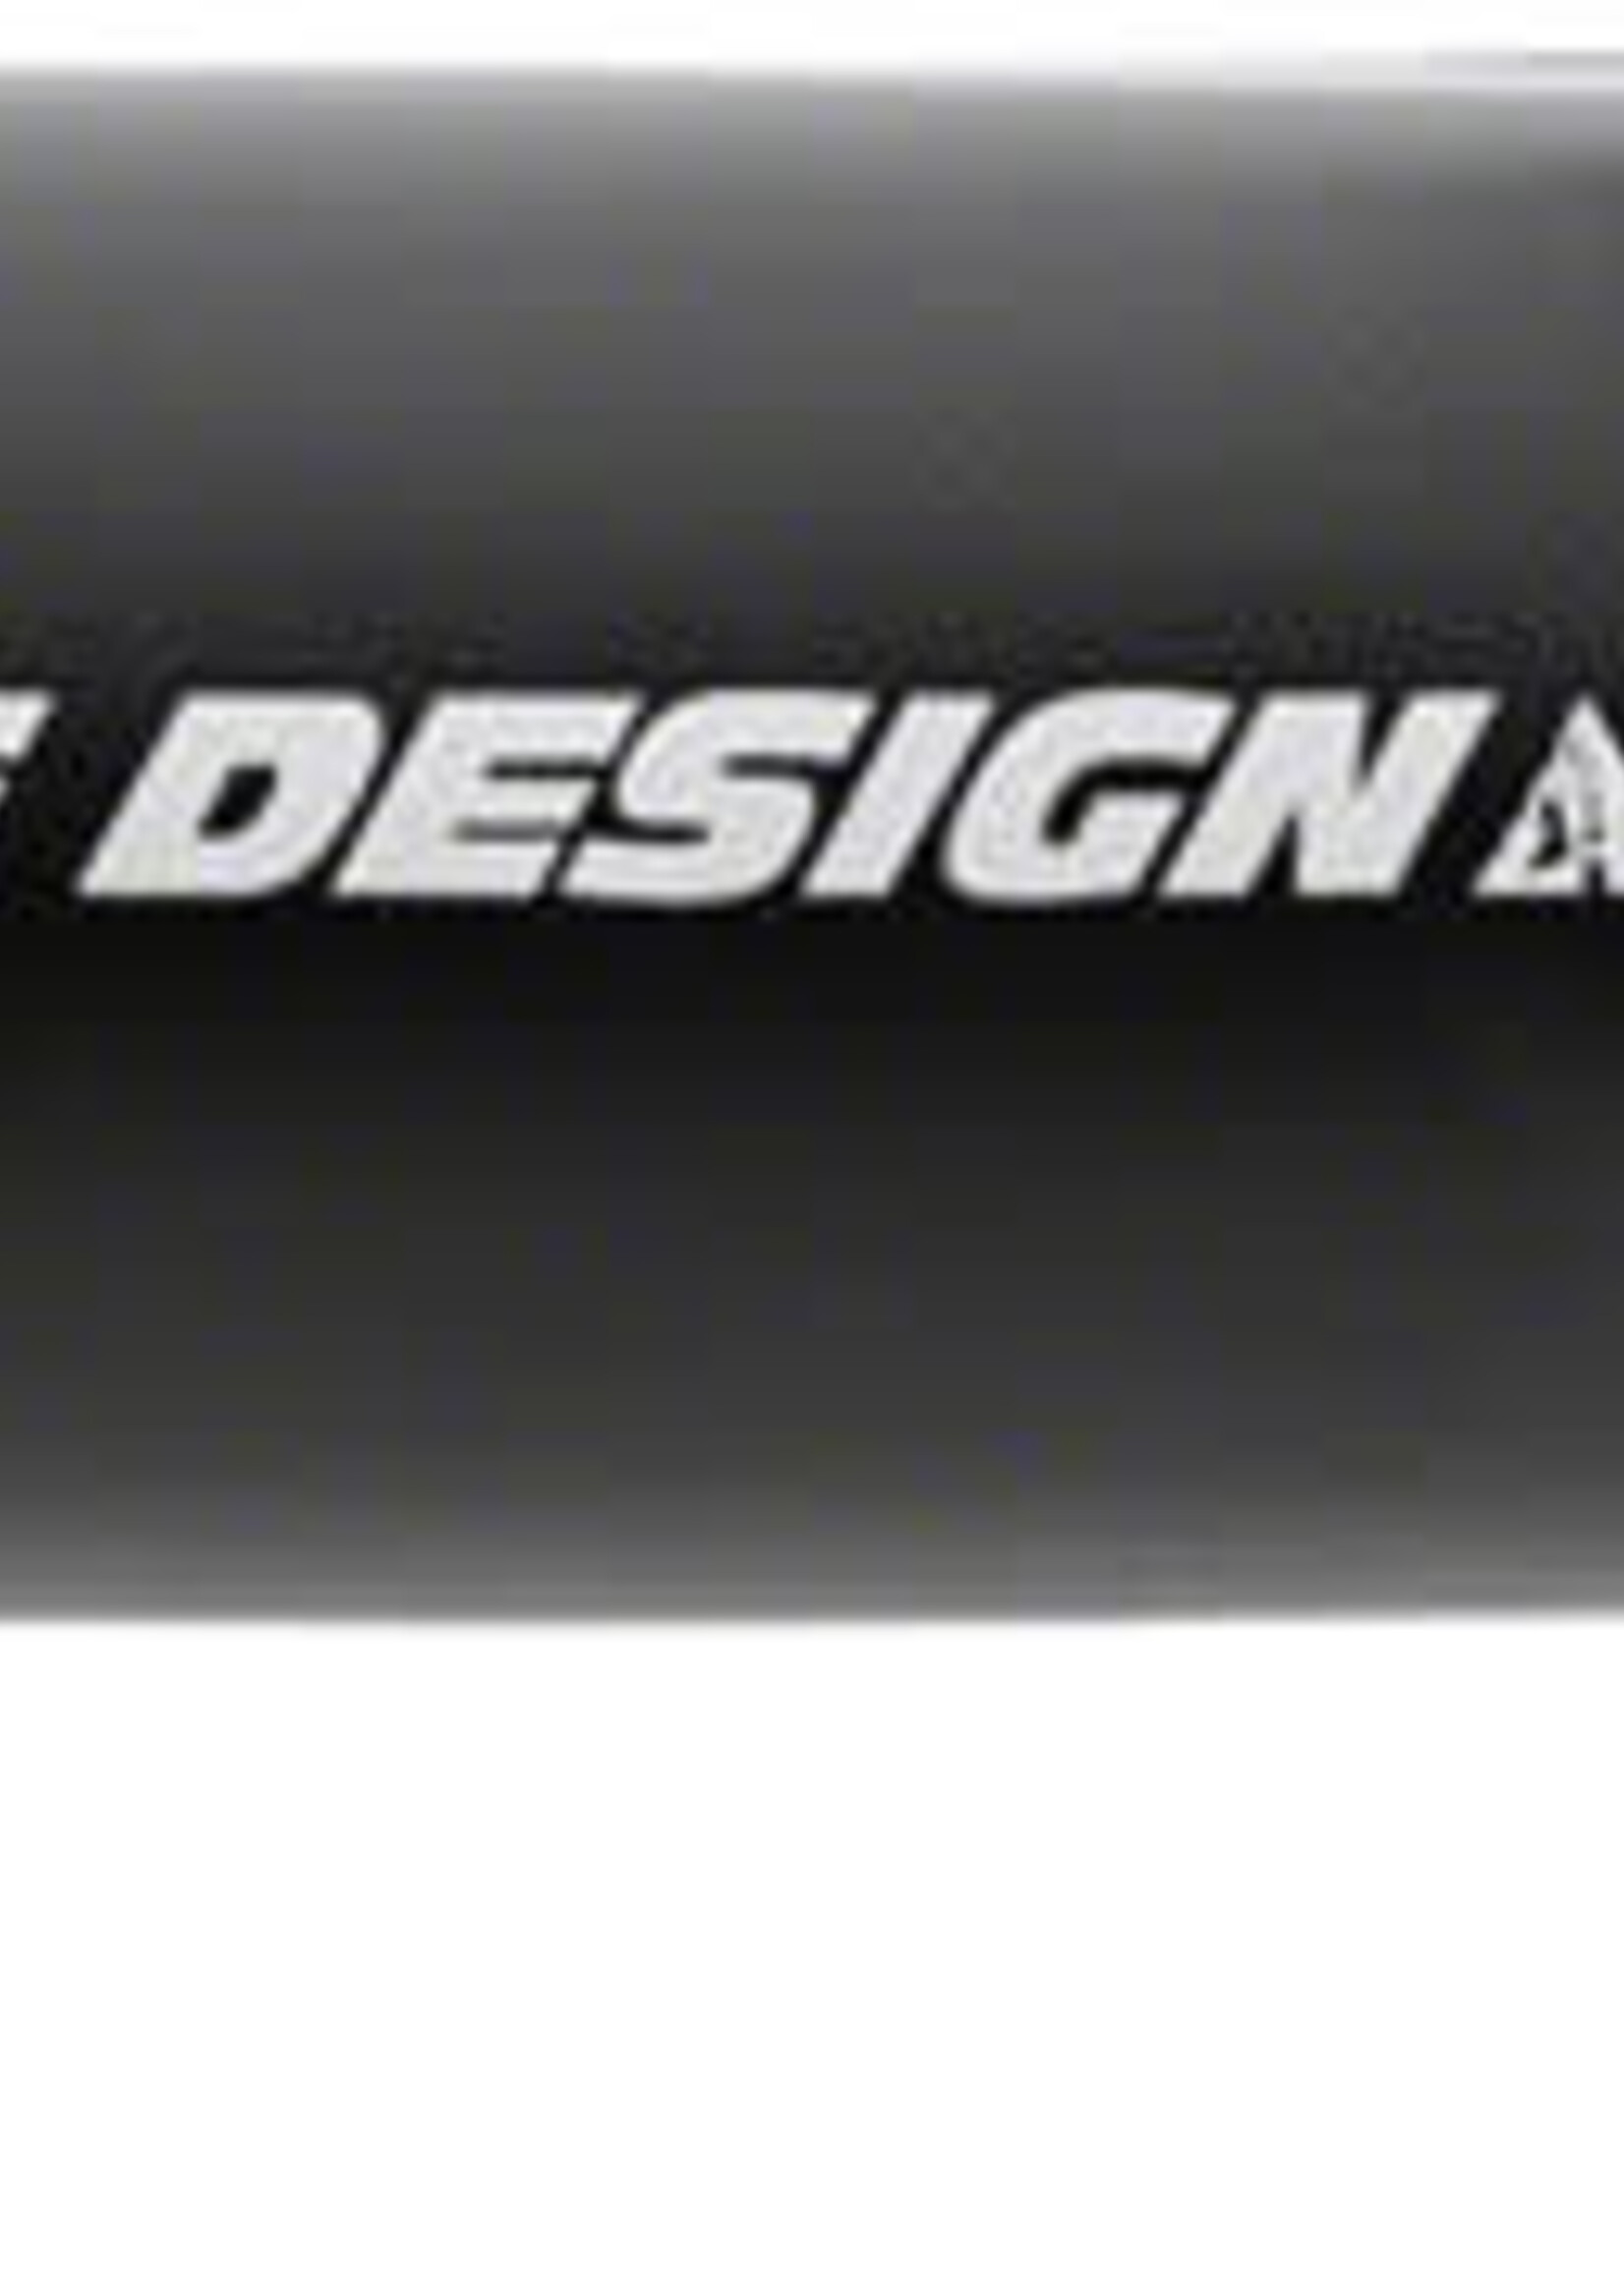 Profile Design Profile Design Aeria Stem - 110mm 31.8 Clamp -17 Aluminum Black